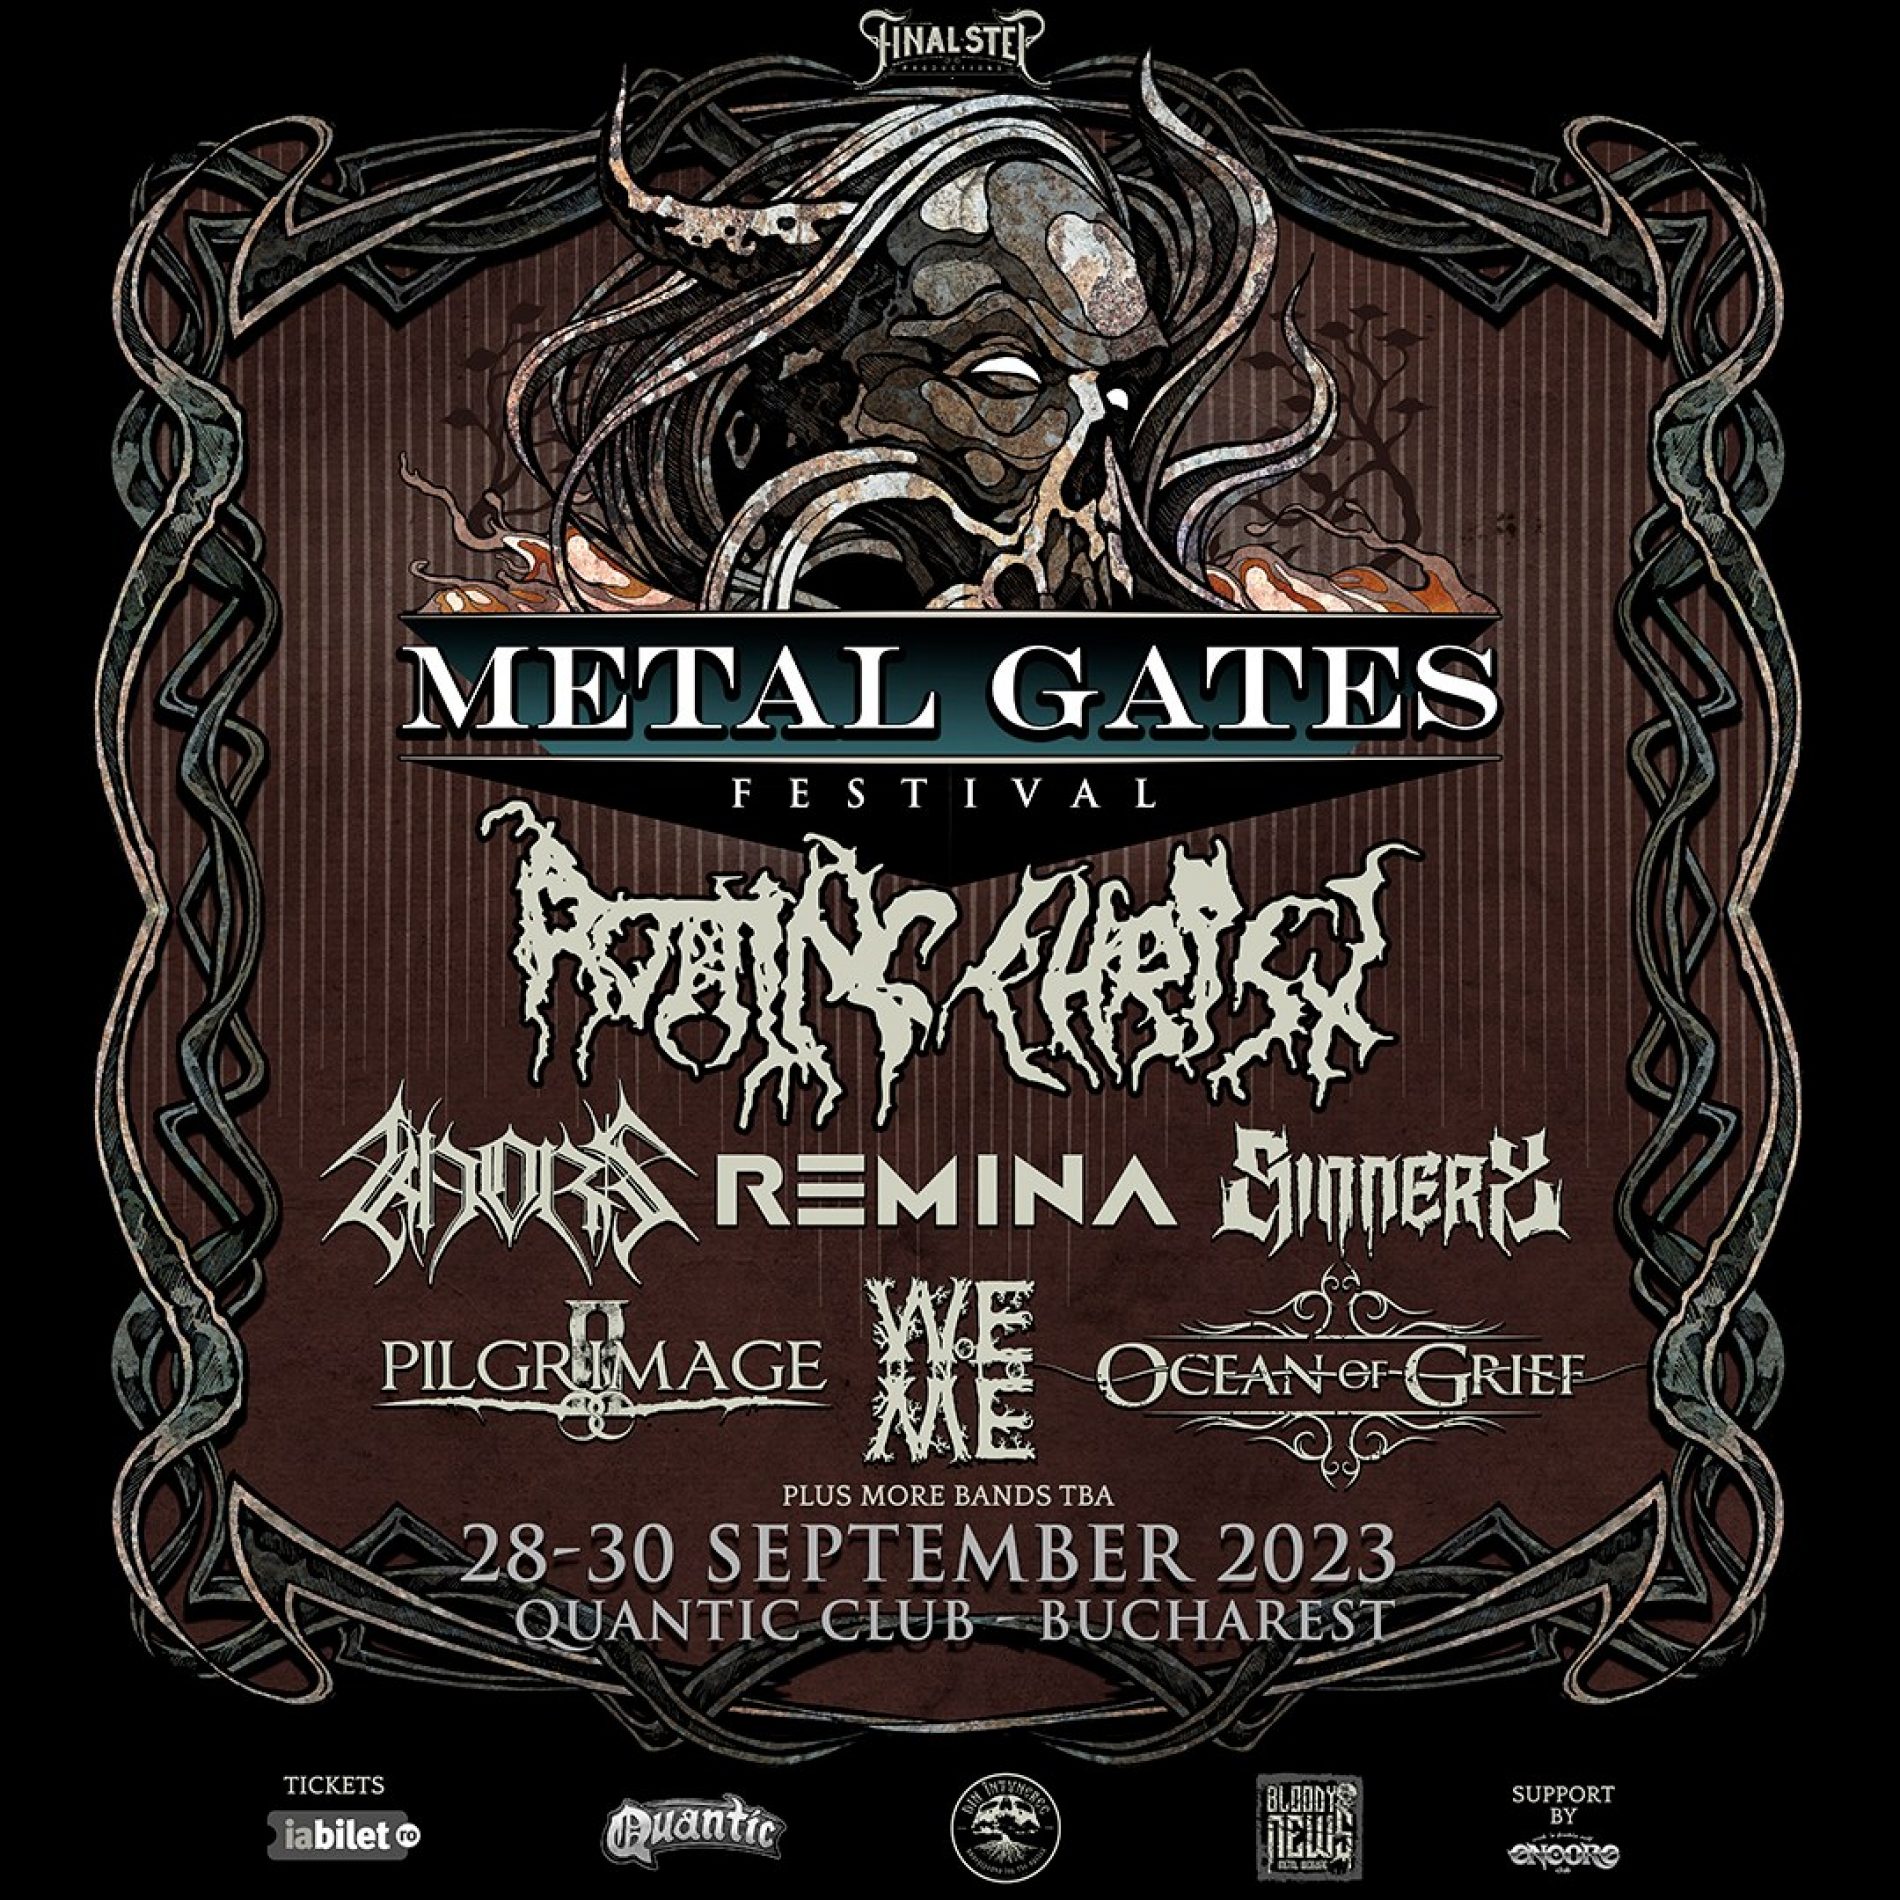 Primele trupe confirmate pentru Metal Gates Festival 2023